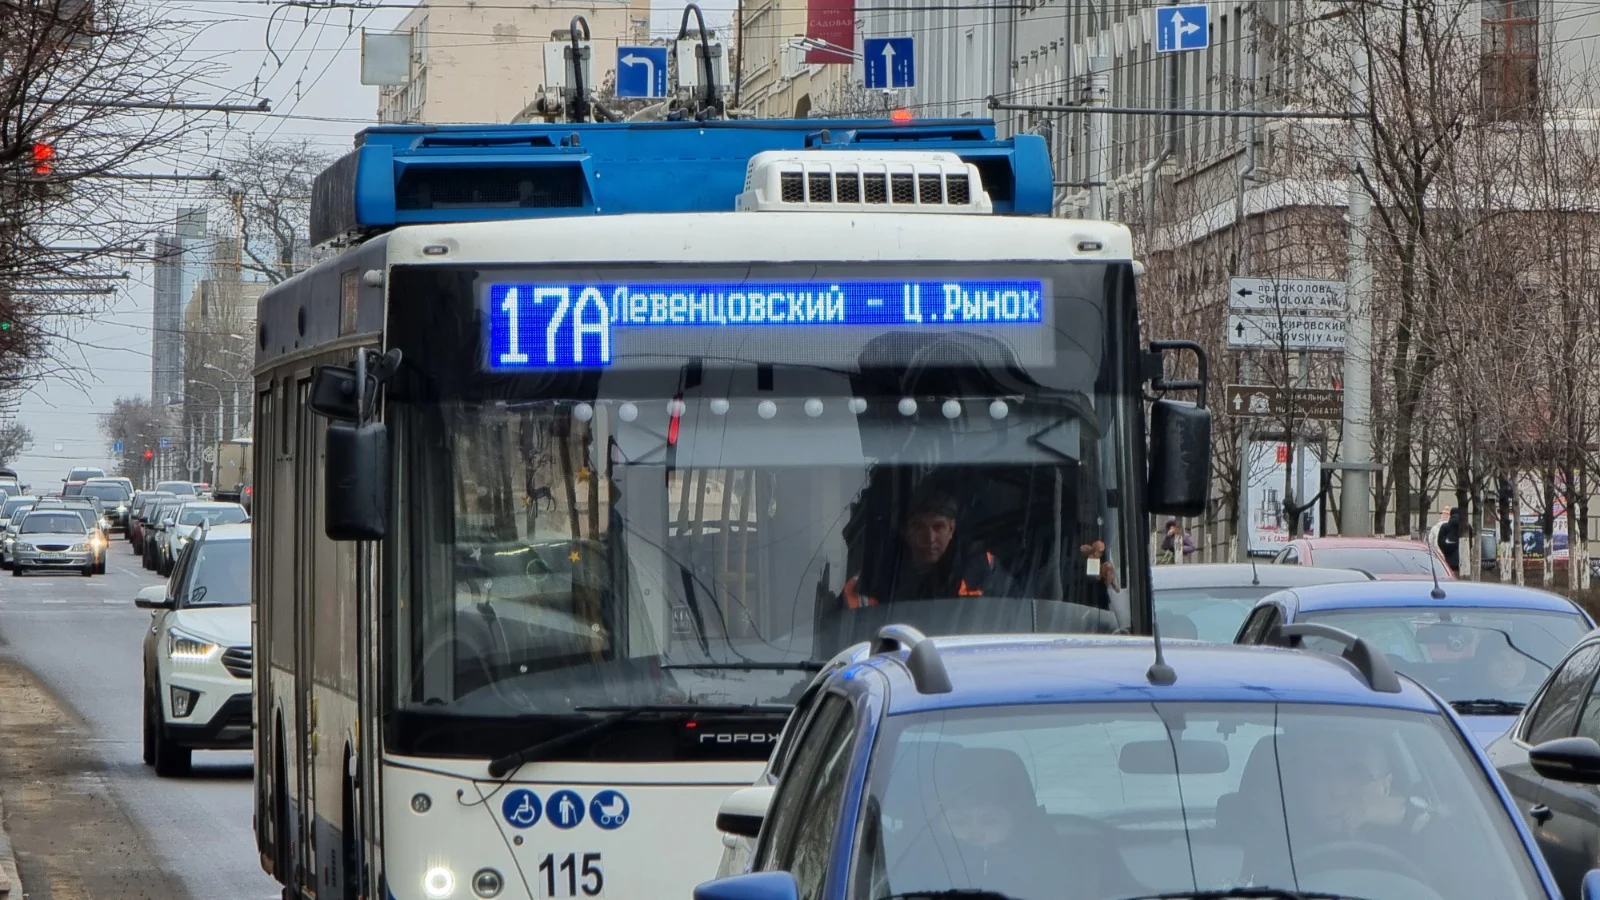 Транспортное МУП РТК обязали обеспечить ростовские троллейбусы кондиционерами за 10 дней